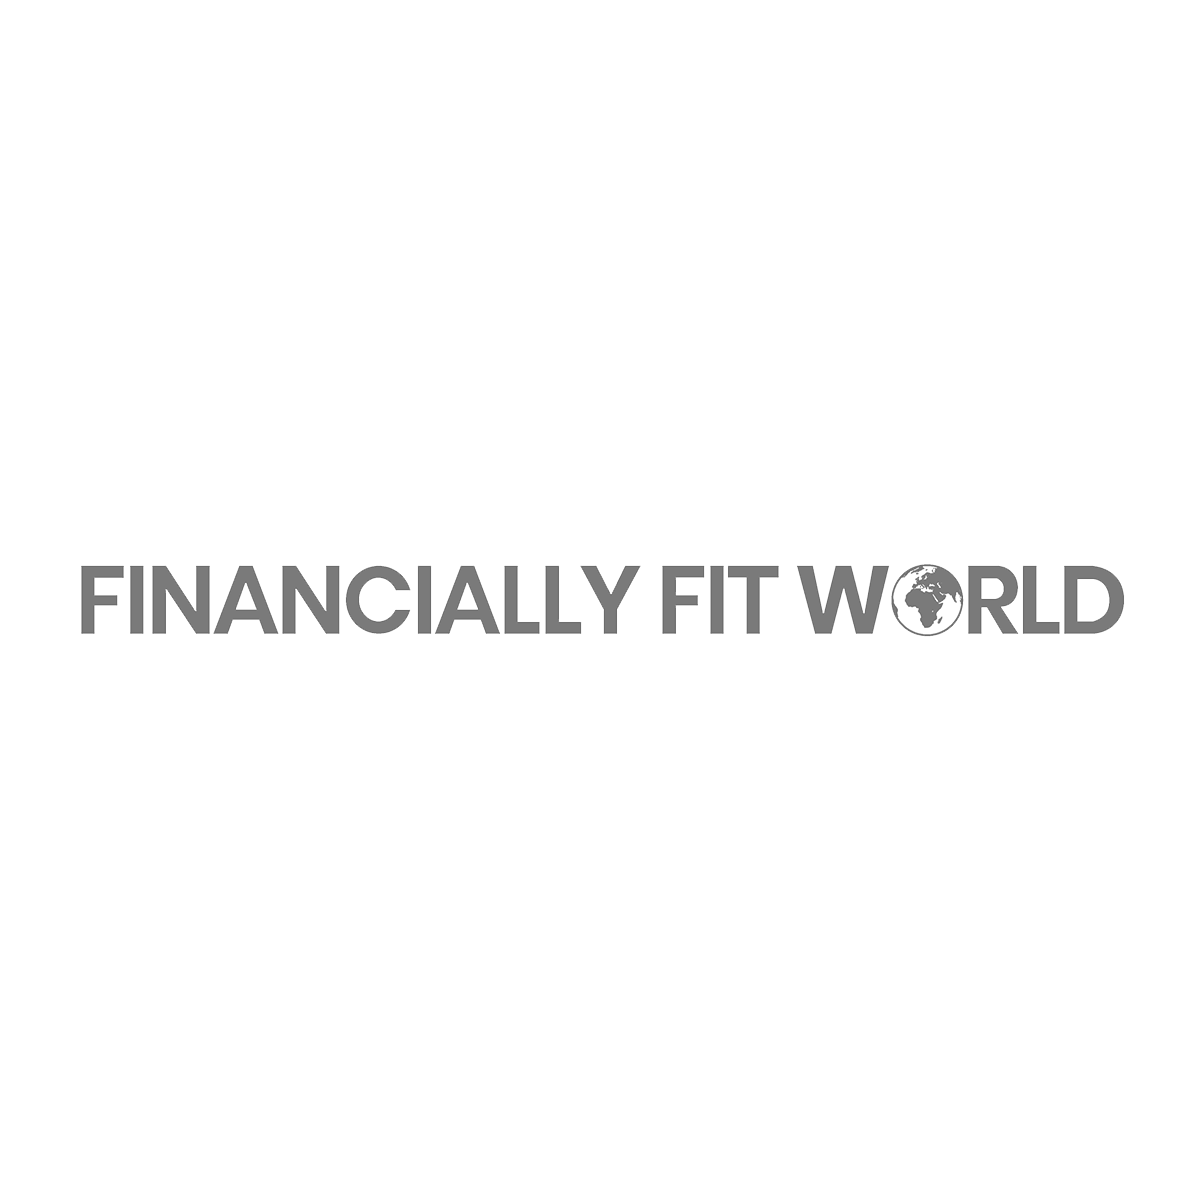 FINANCIALLY-FIT-WORLD-logo_grey